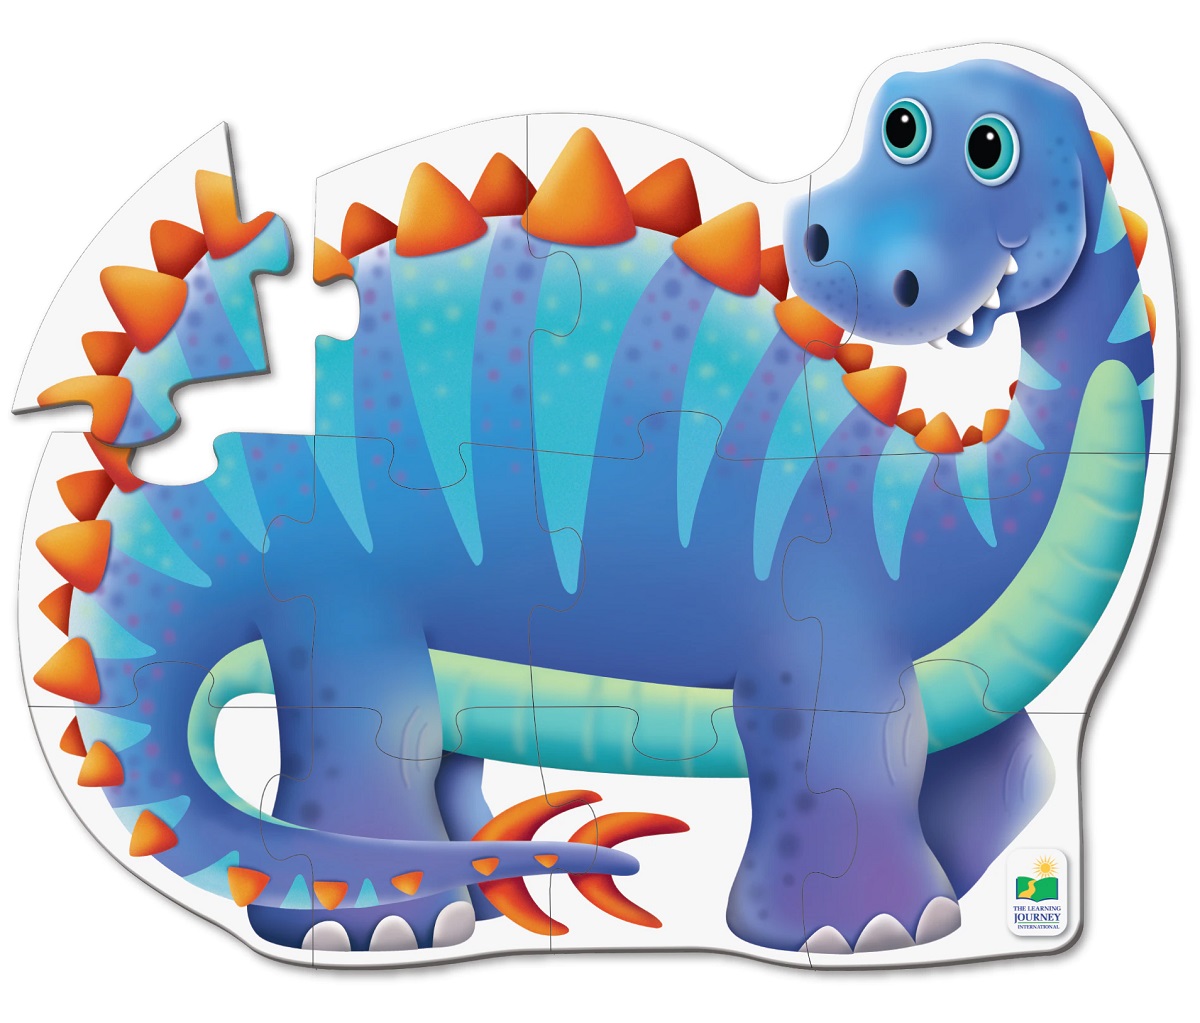 Primul meu puzzle de podea: Dinozaur